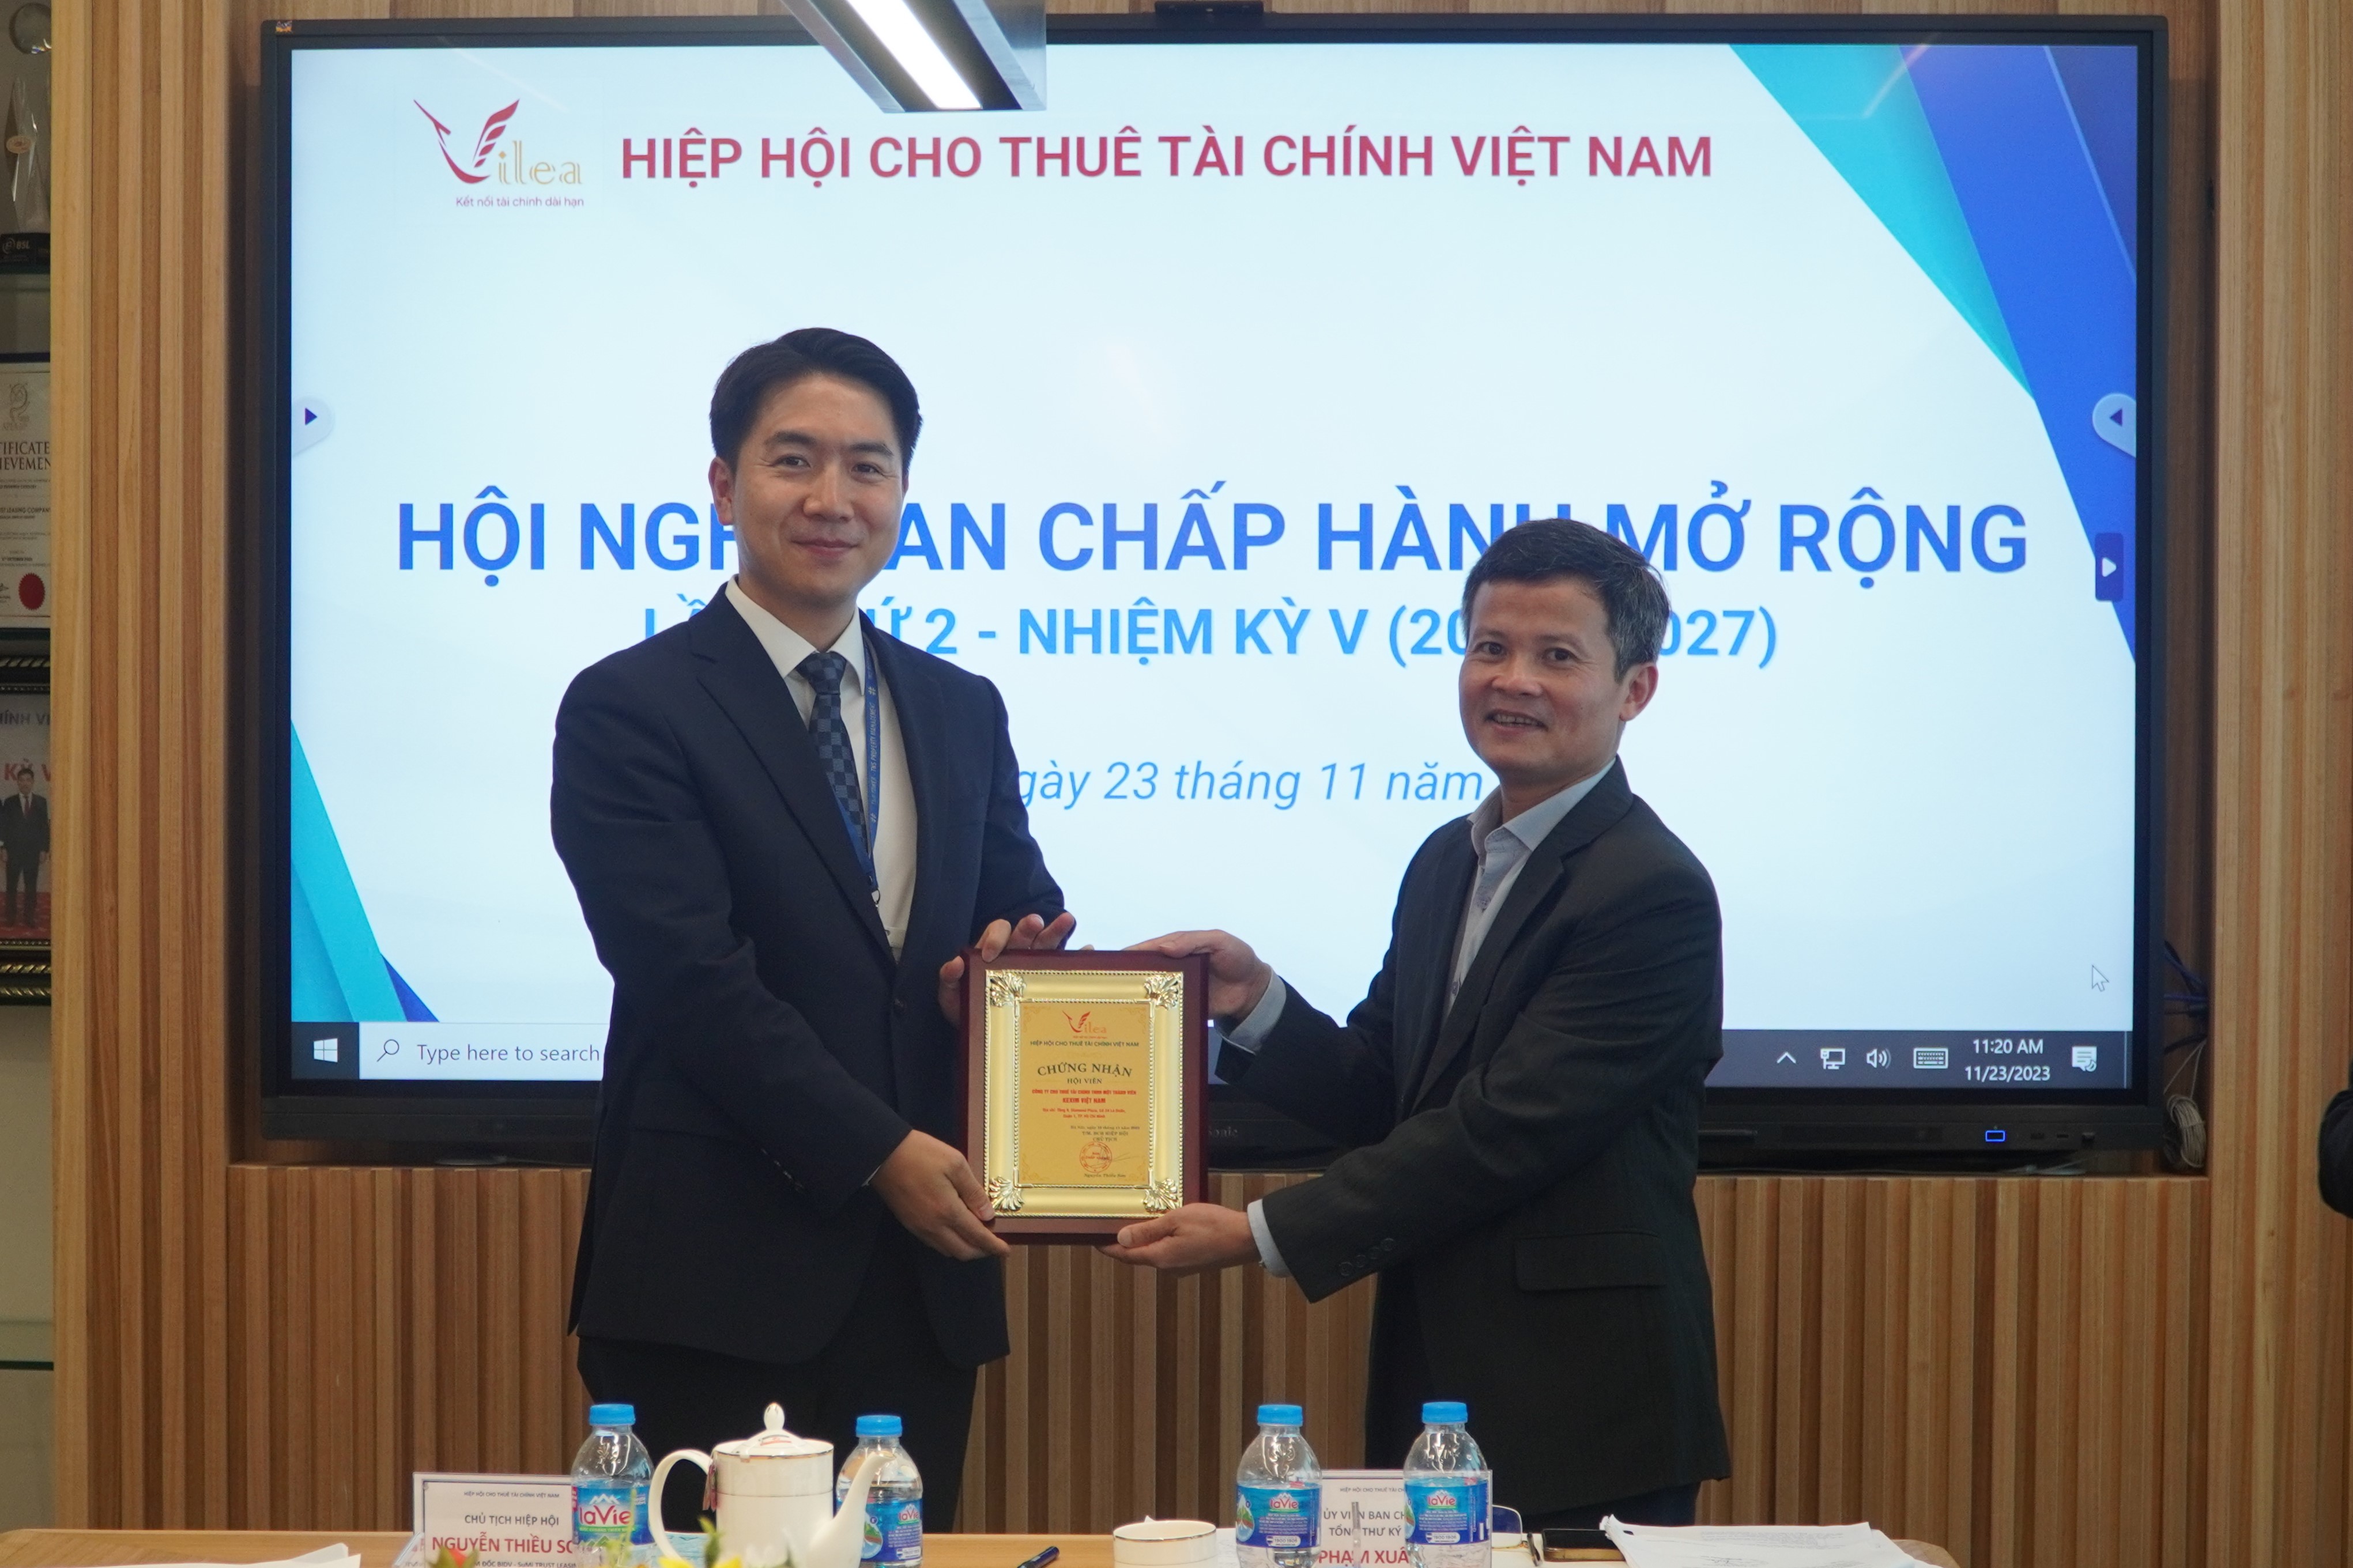 Hiệp hội CTTC Việt Nam thông qua việc kết nạp hội viên với Công ty CTTC Kexim